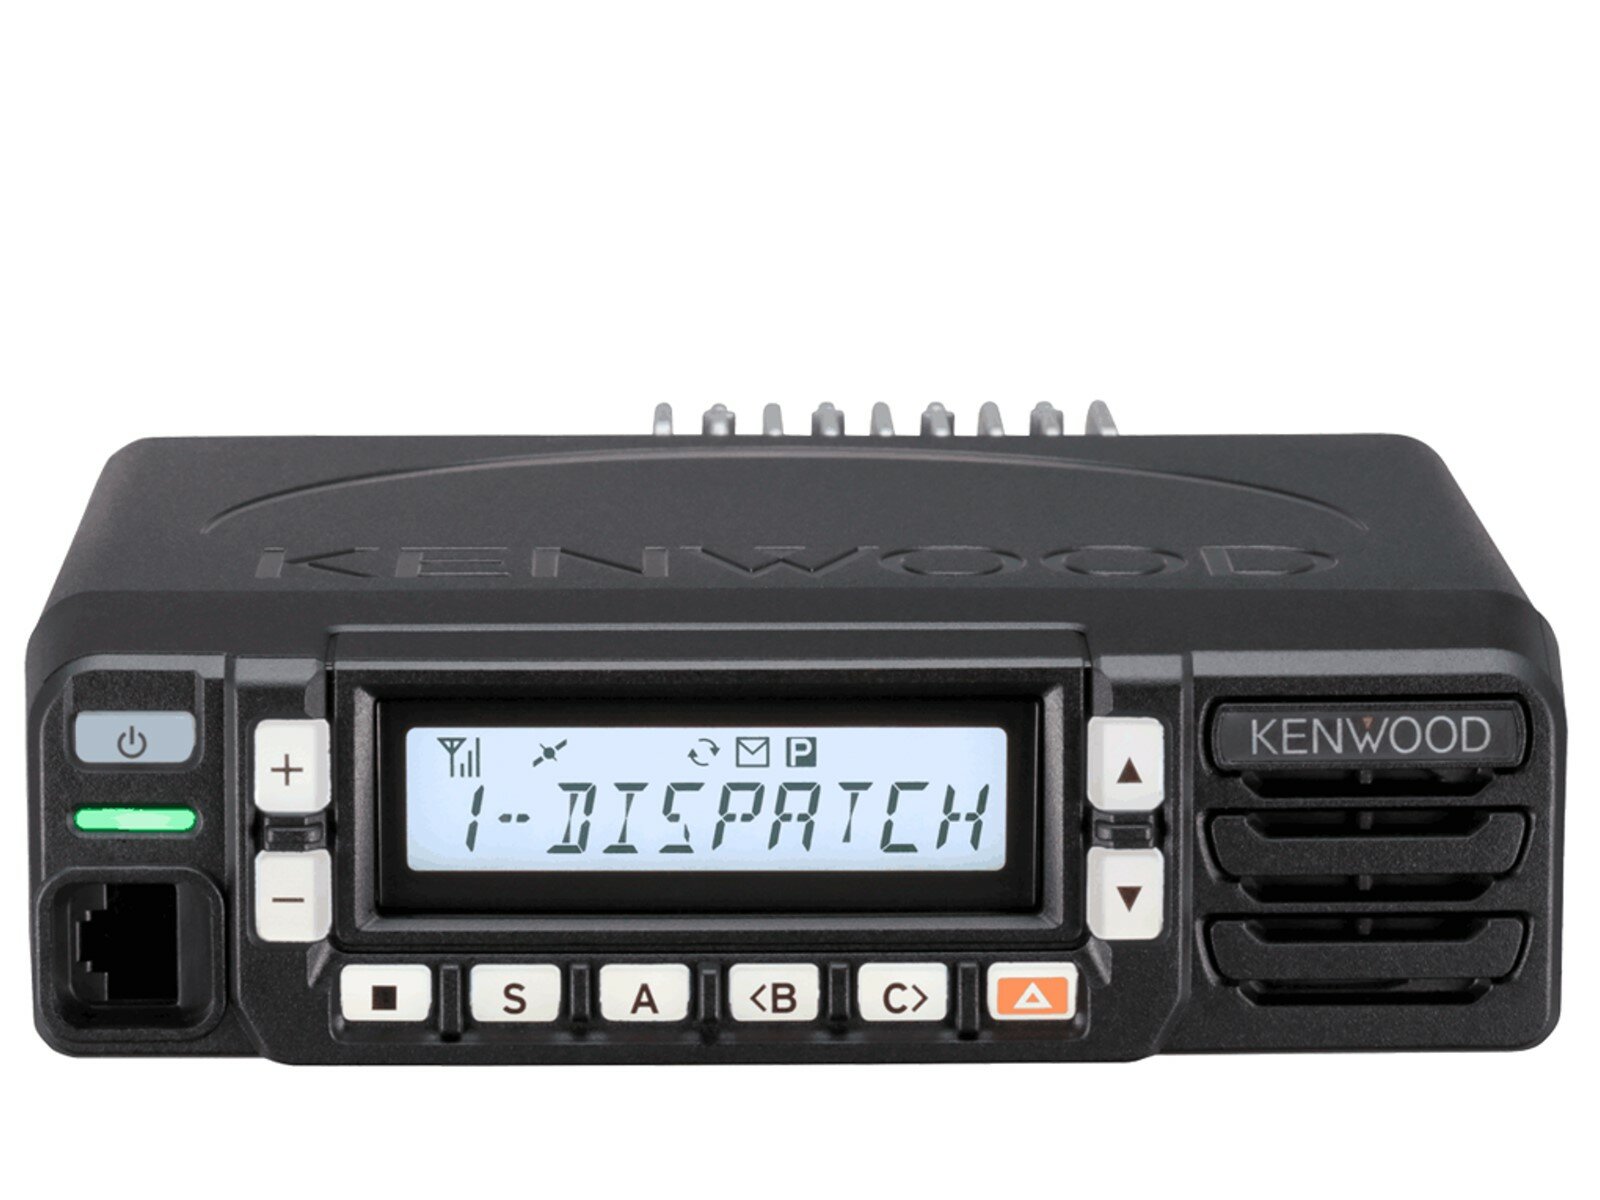 Kenwood NX-1800AE UHF Analog